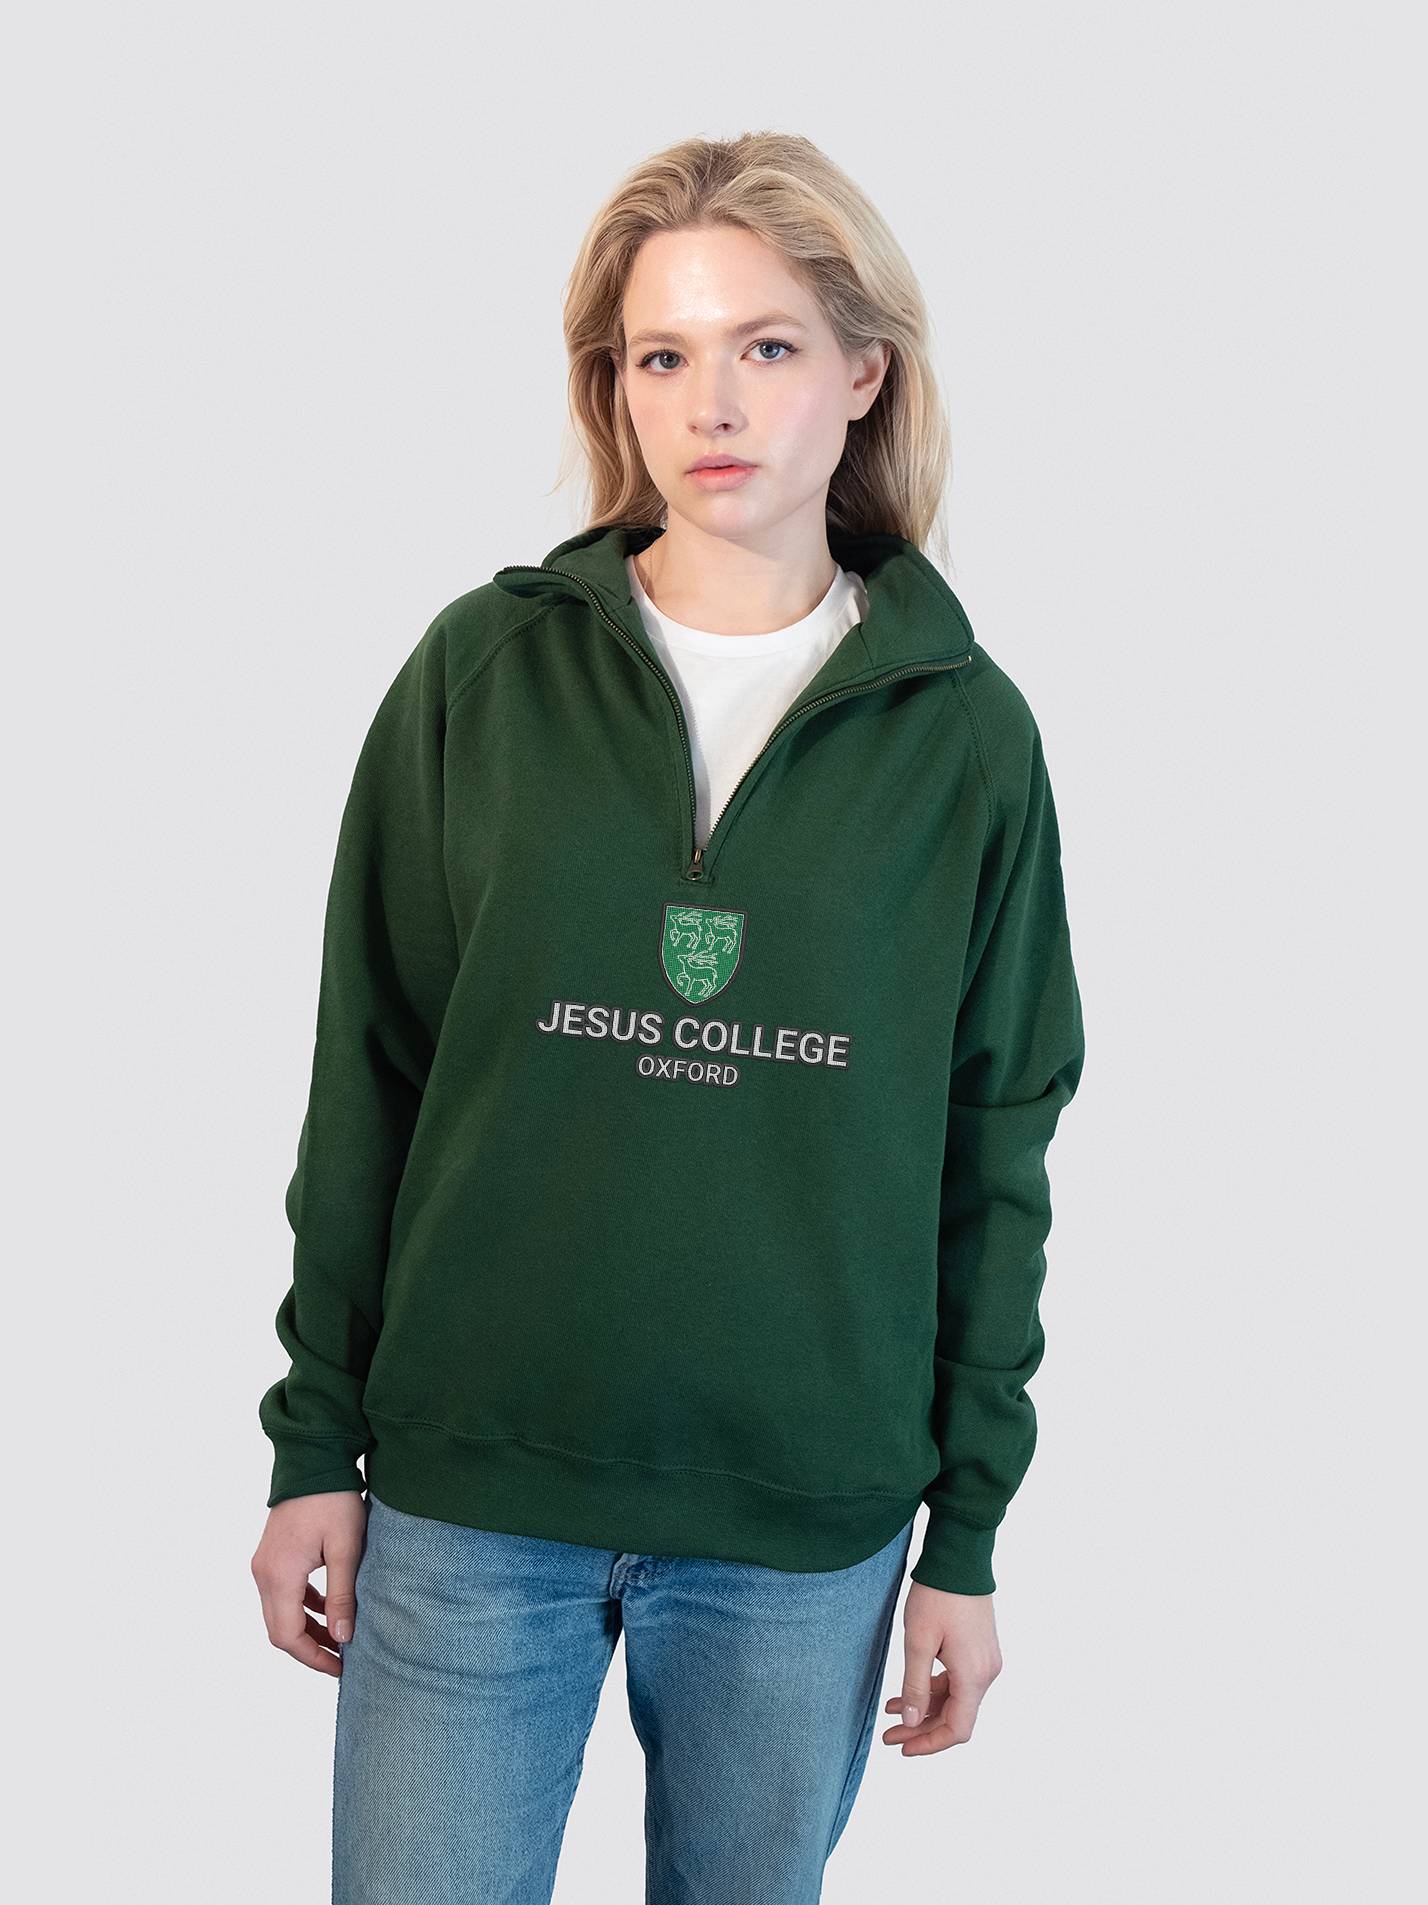 Jesus College Oxford Heritage Unisex 1/4 Zip Sweatshirt